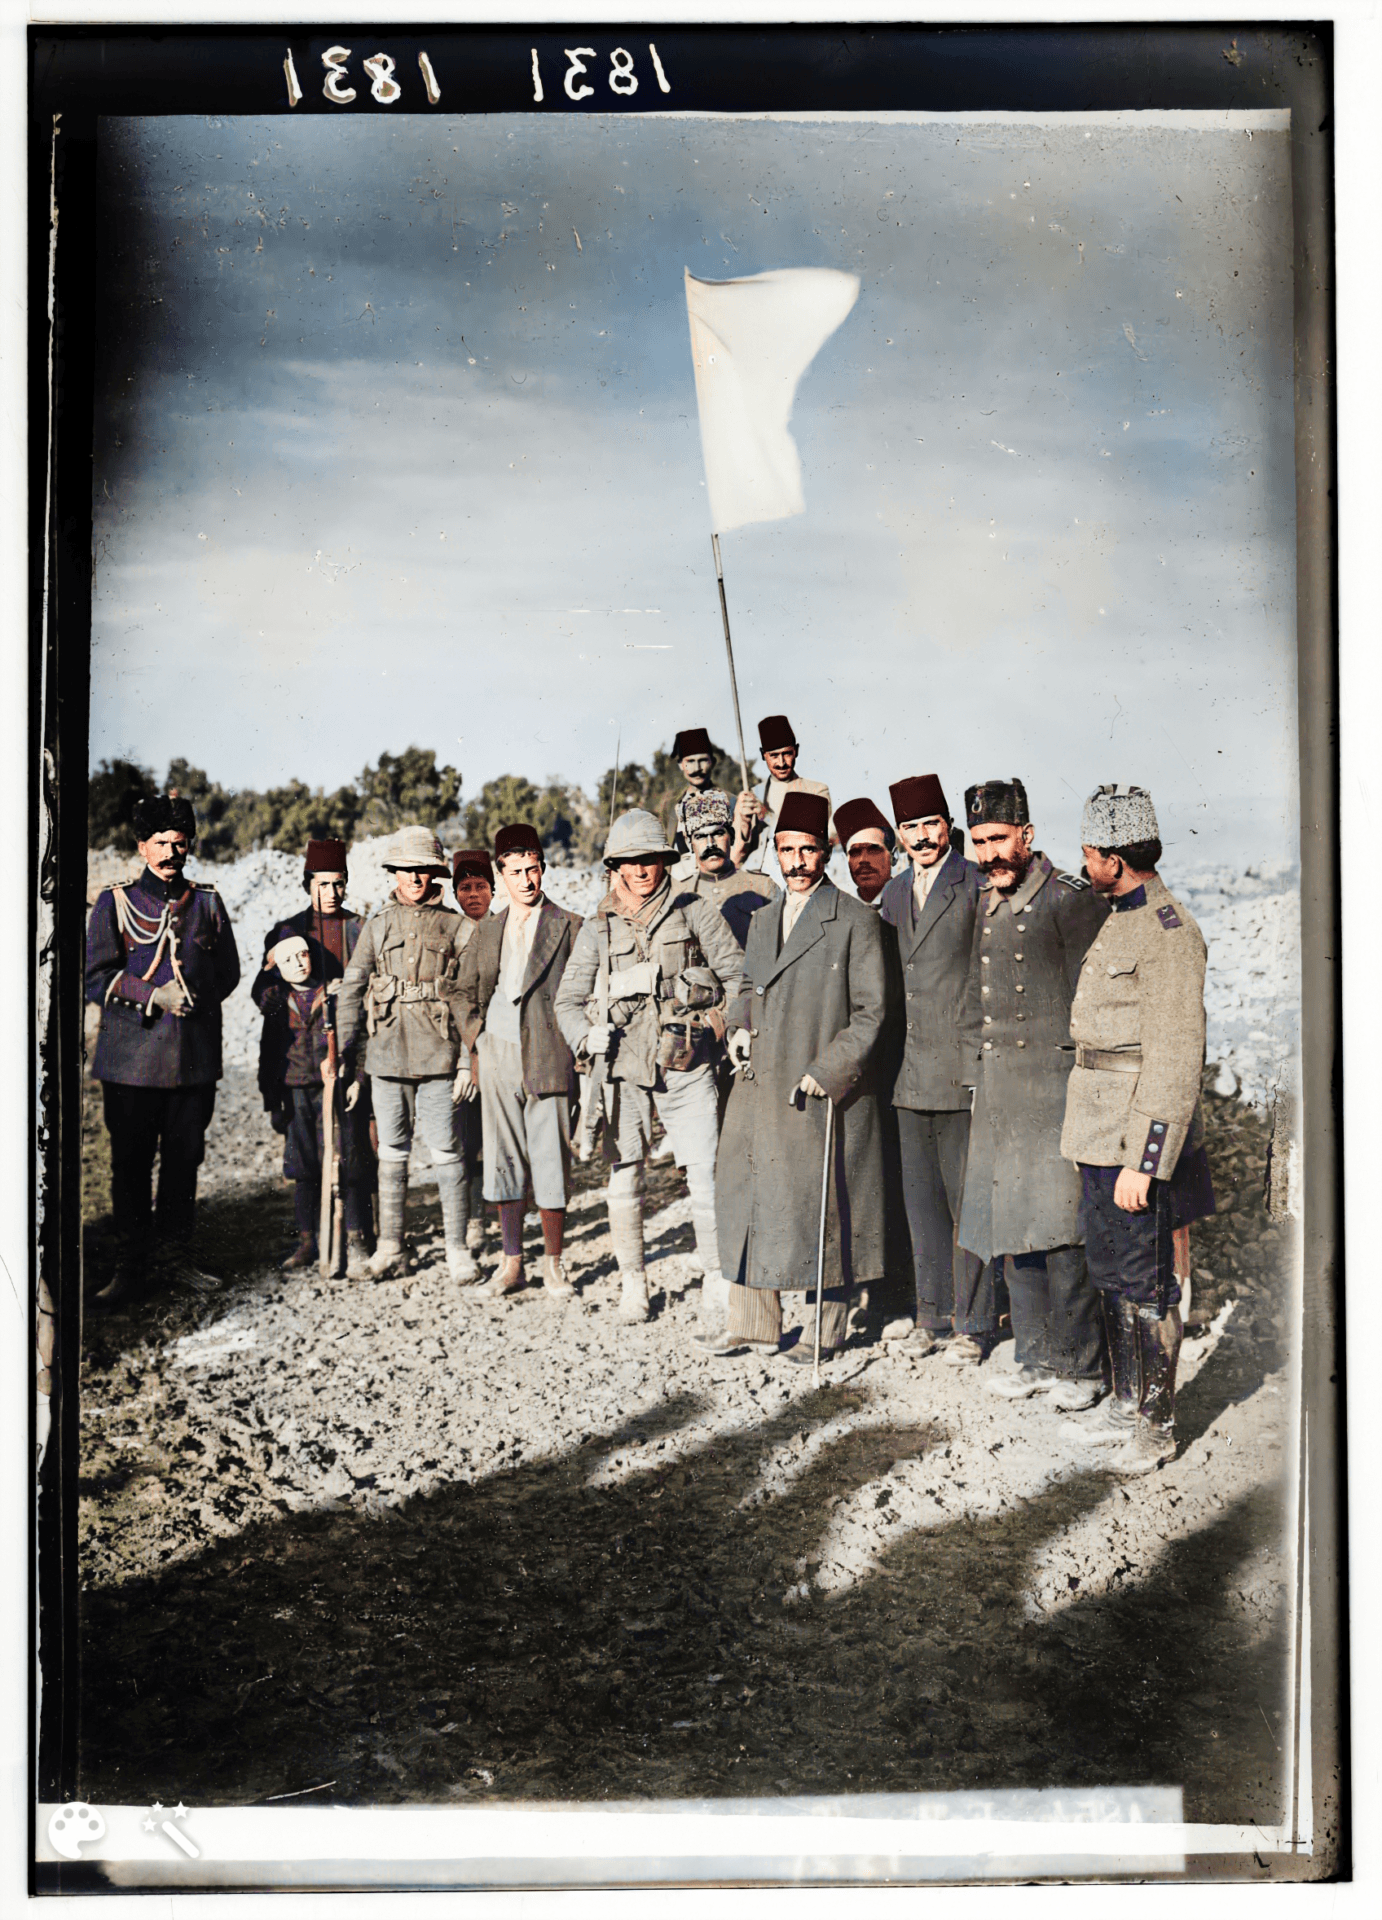 כניעת השלטון העות'מאני בפני הצבא הבריטי, ה-9 בדצמבר 1917 והנפת דגל לבן בירושלים. במרכז התמונה ראש עיריית ירושלים חוסיין אל-חוסייני. באדיבות ספריית הקונגרס האמריקני, מס' תמונה: LC-DIG-matpc-00162